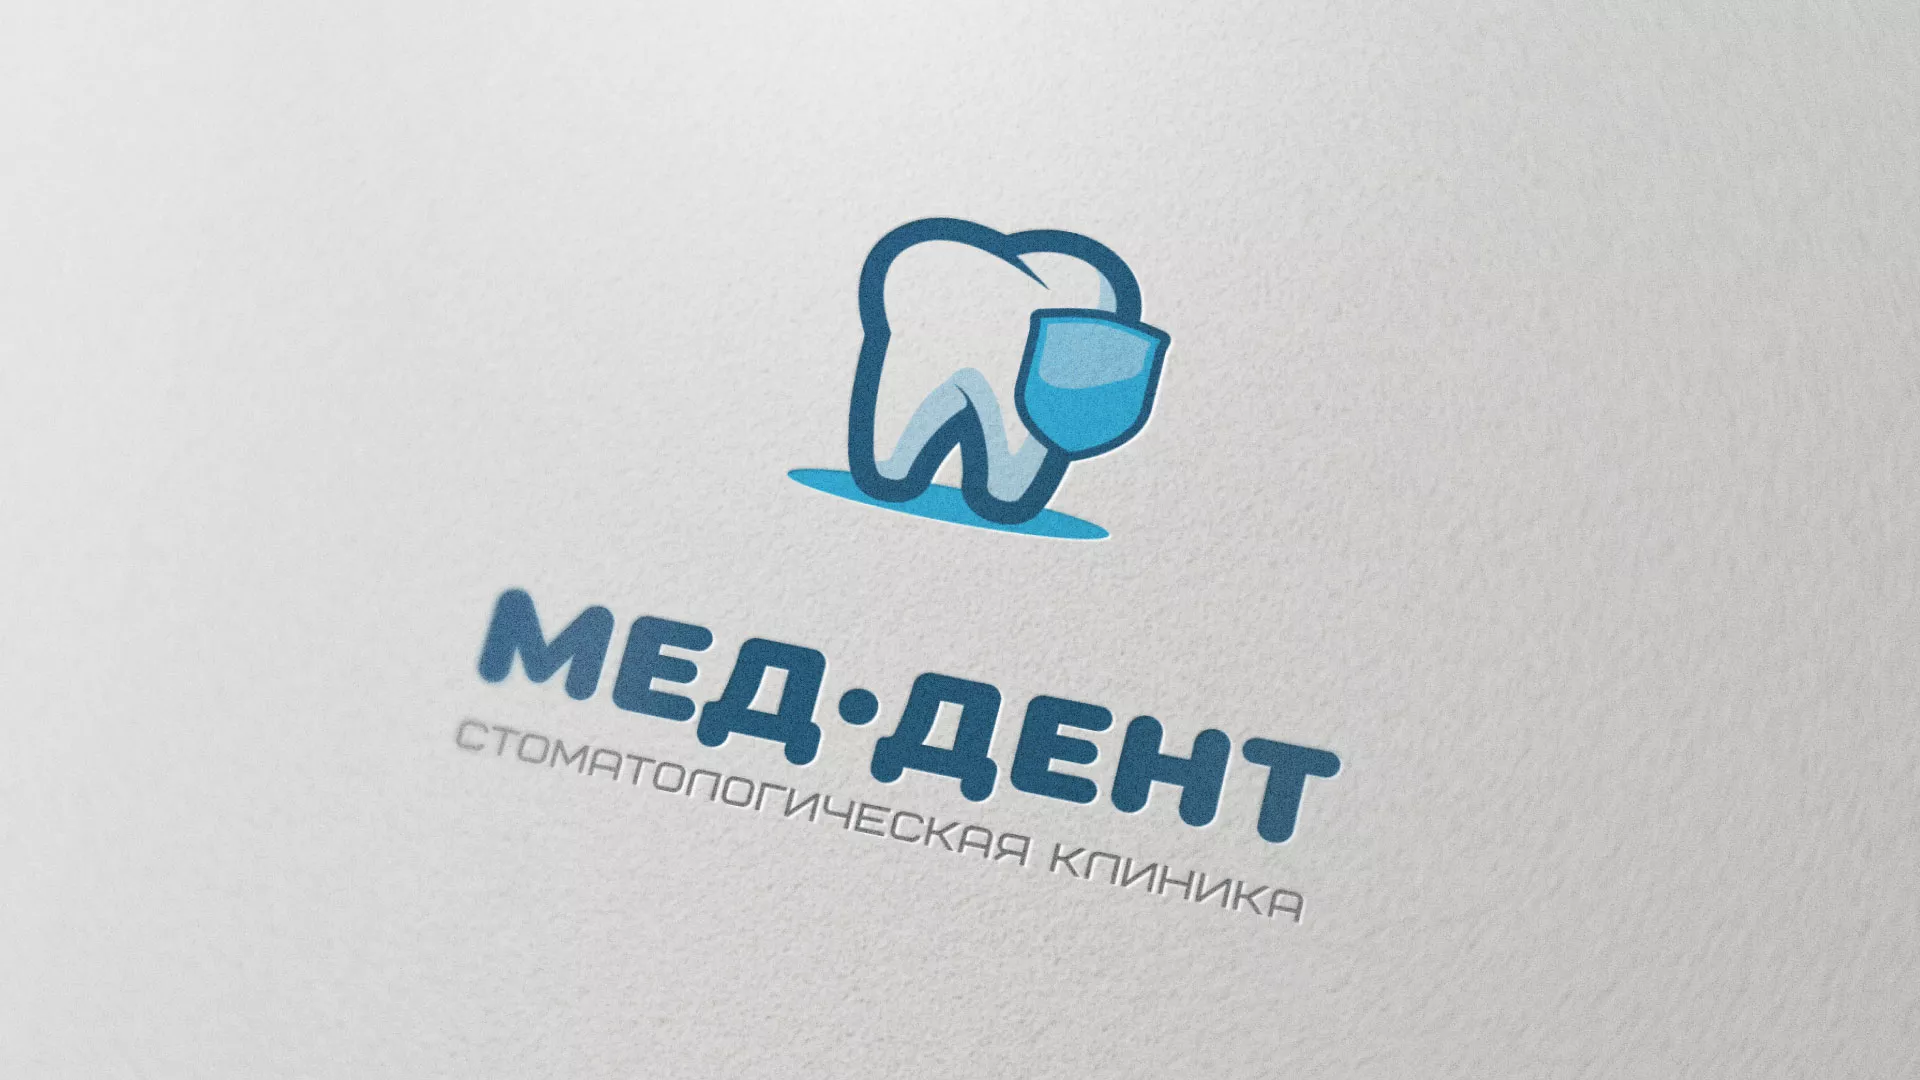 Разработка логотипа стоматологической клиники «МЕД-ДЕНТ» в Усть-Каменогорске